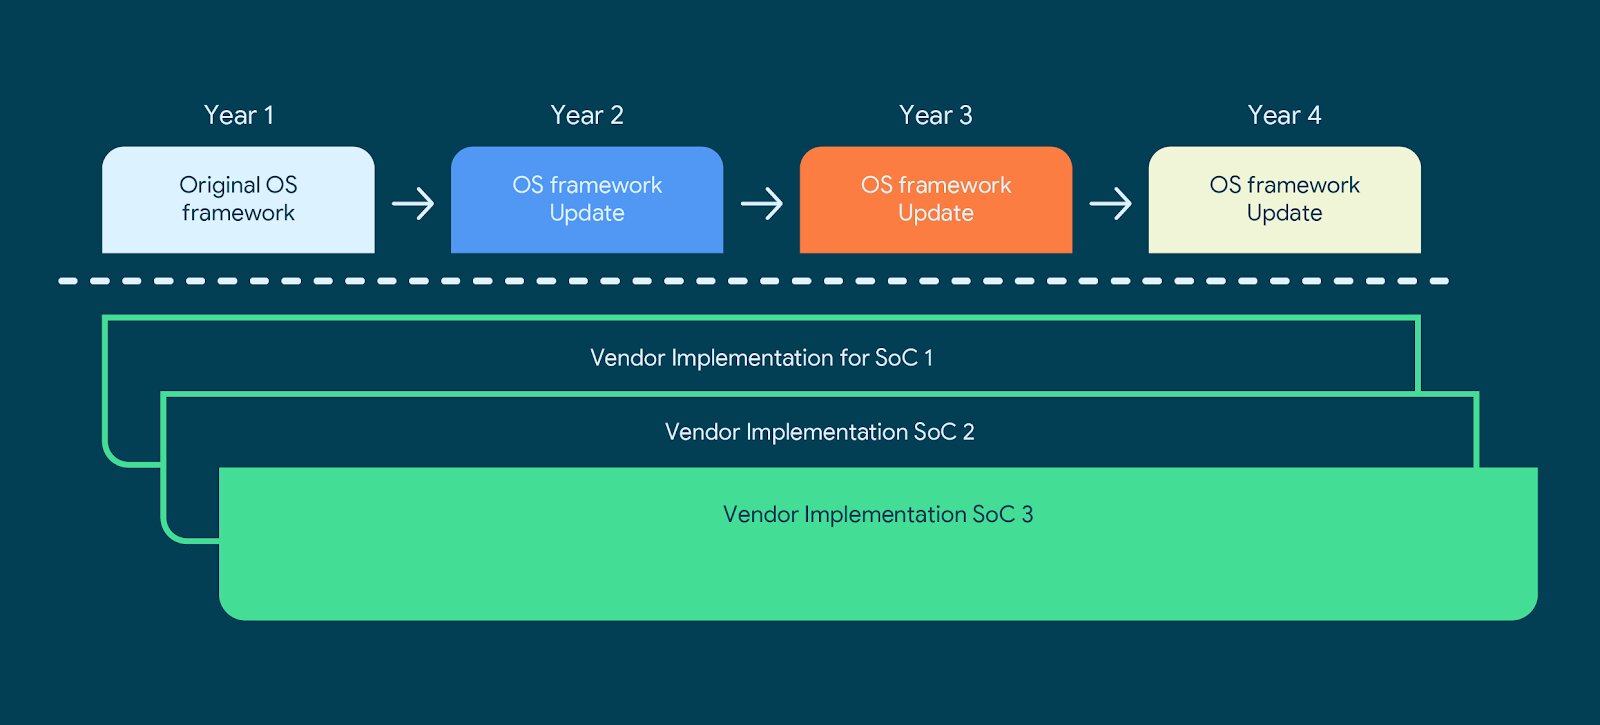 Neuer Aufbau für OS-Framework und Vendor Implementations